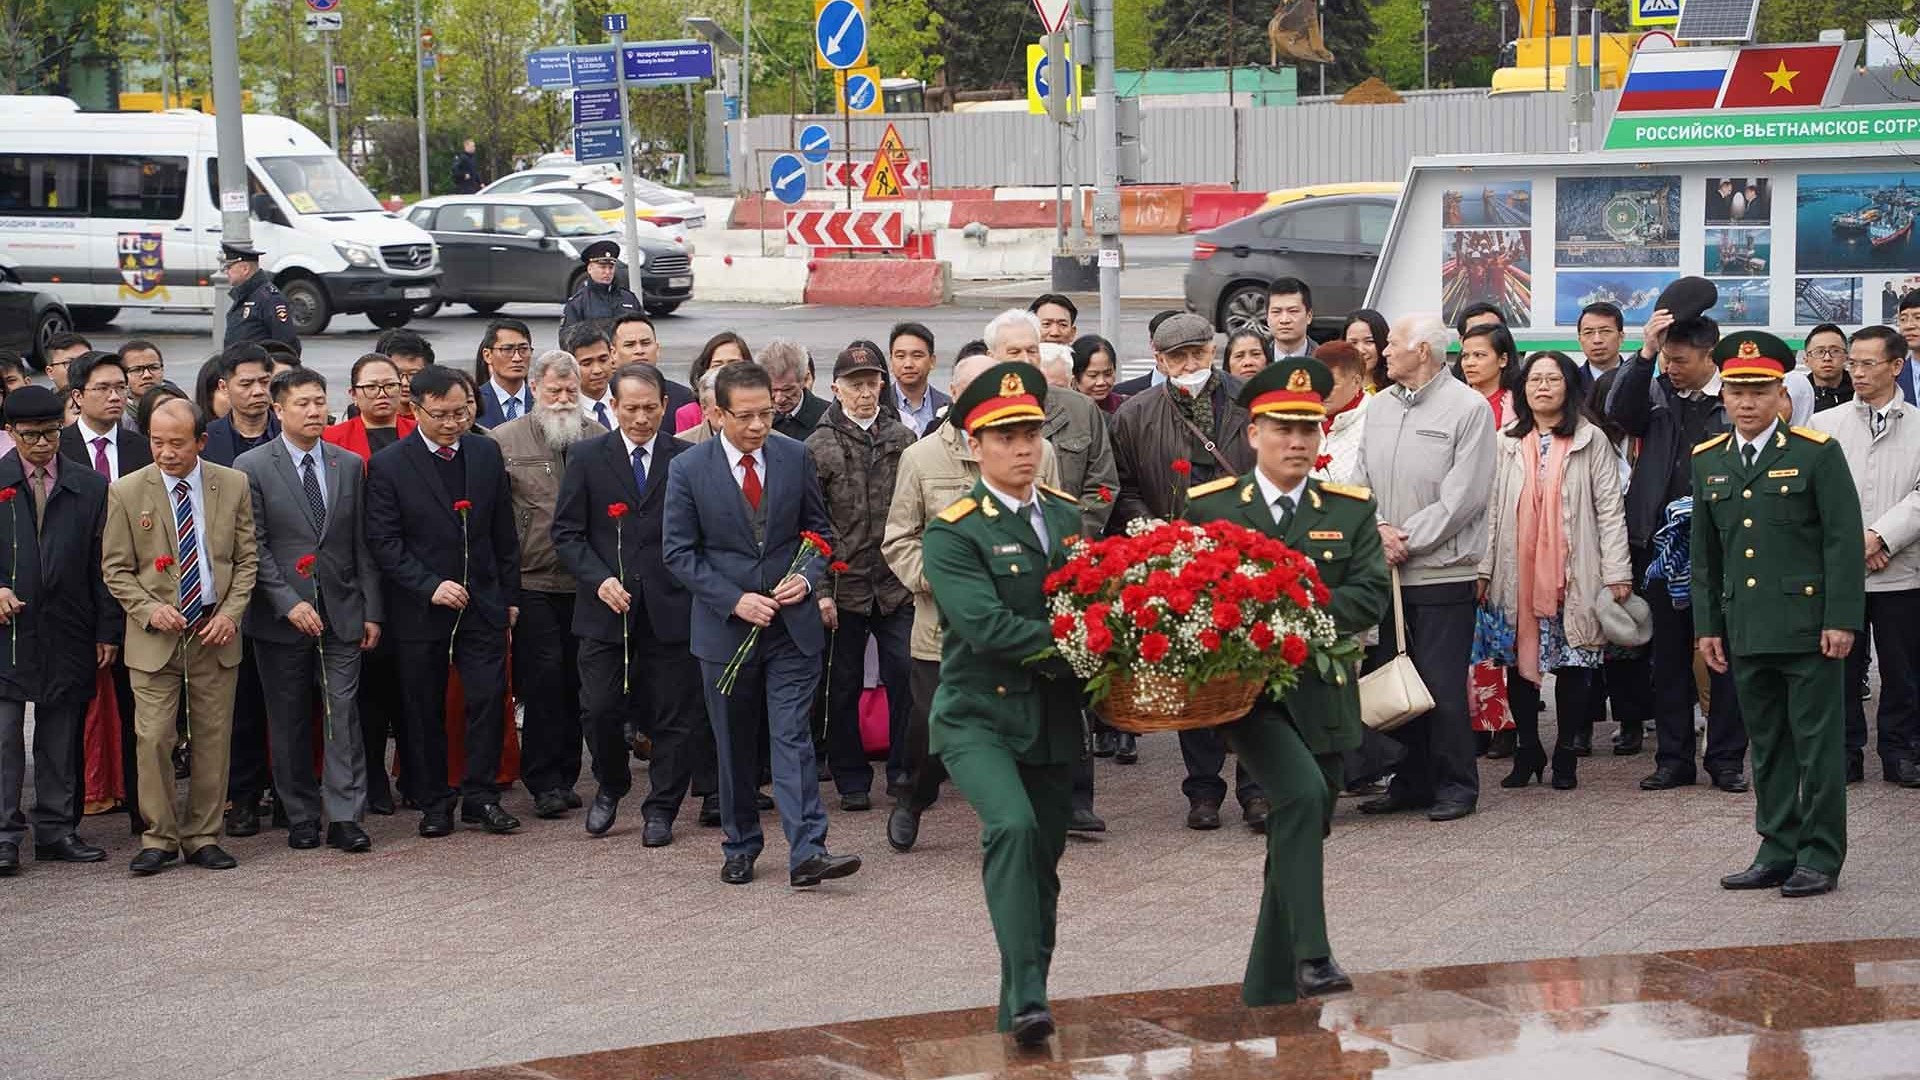 Dâng hoa kỷ niệm 132 năm ngày sinh Chủ tịch Hồ Chí Minh tại Moscow, Liên bang Nga